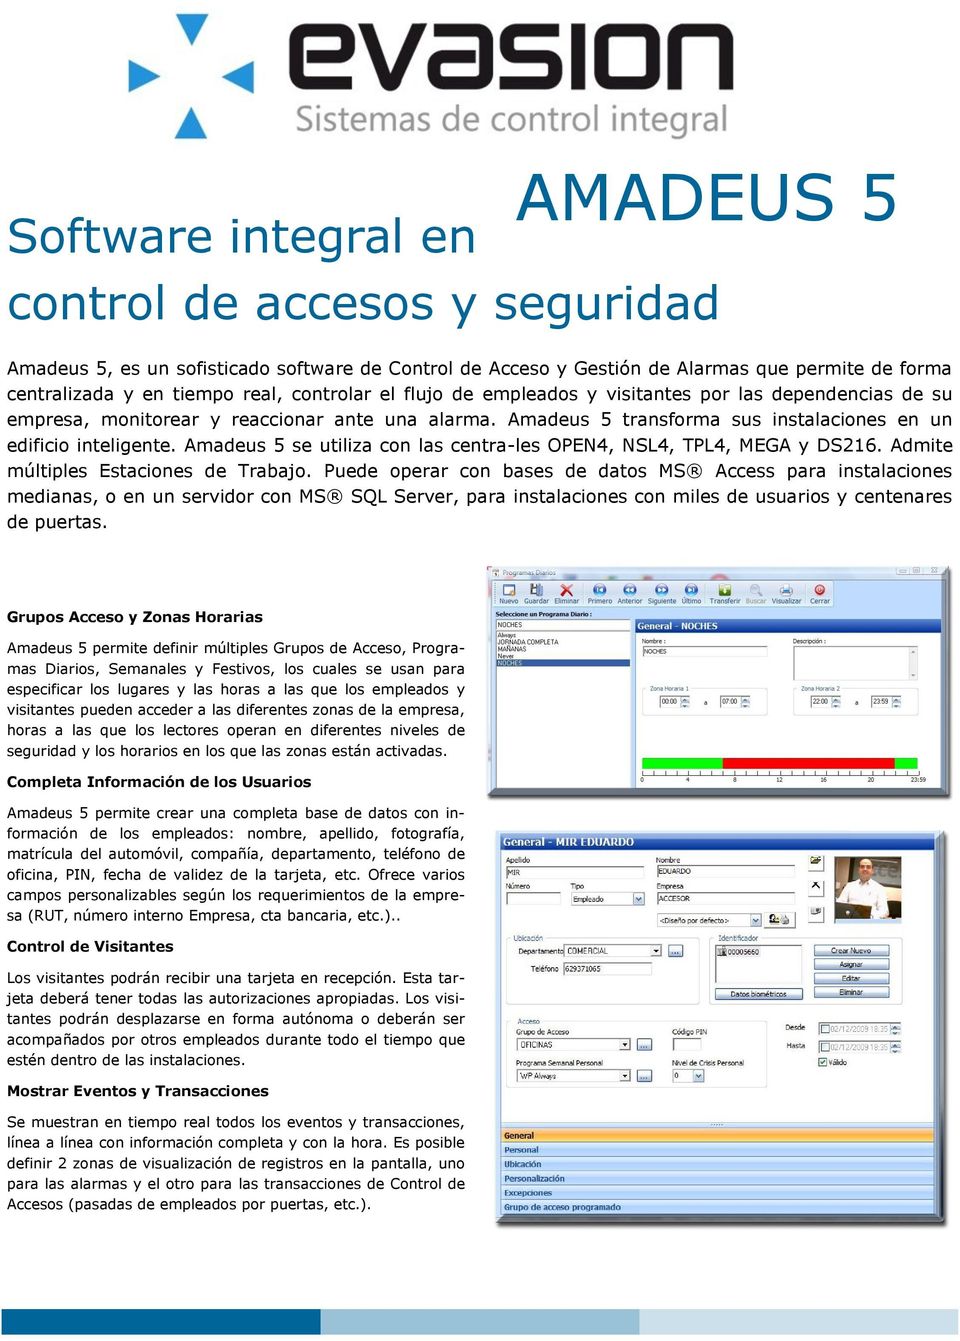 Amadeus 5 se utiliza con las centra-les OPEN4, NSL4, TPL4, MEGA y DS216. Admite múltiples Estaciones de Trabajo.